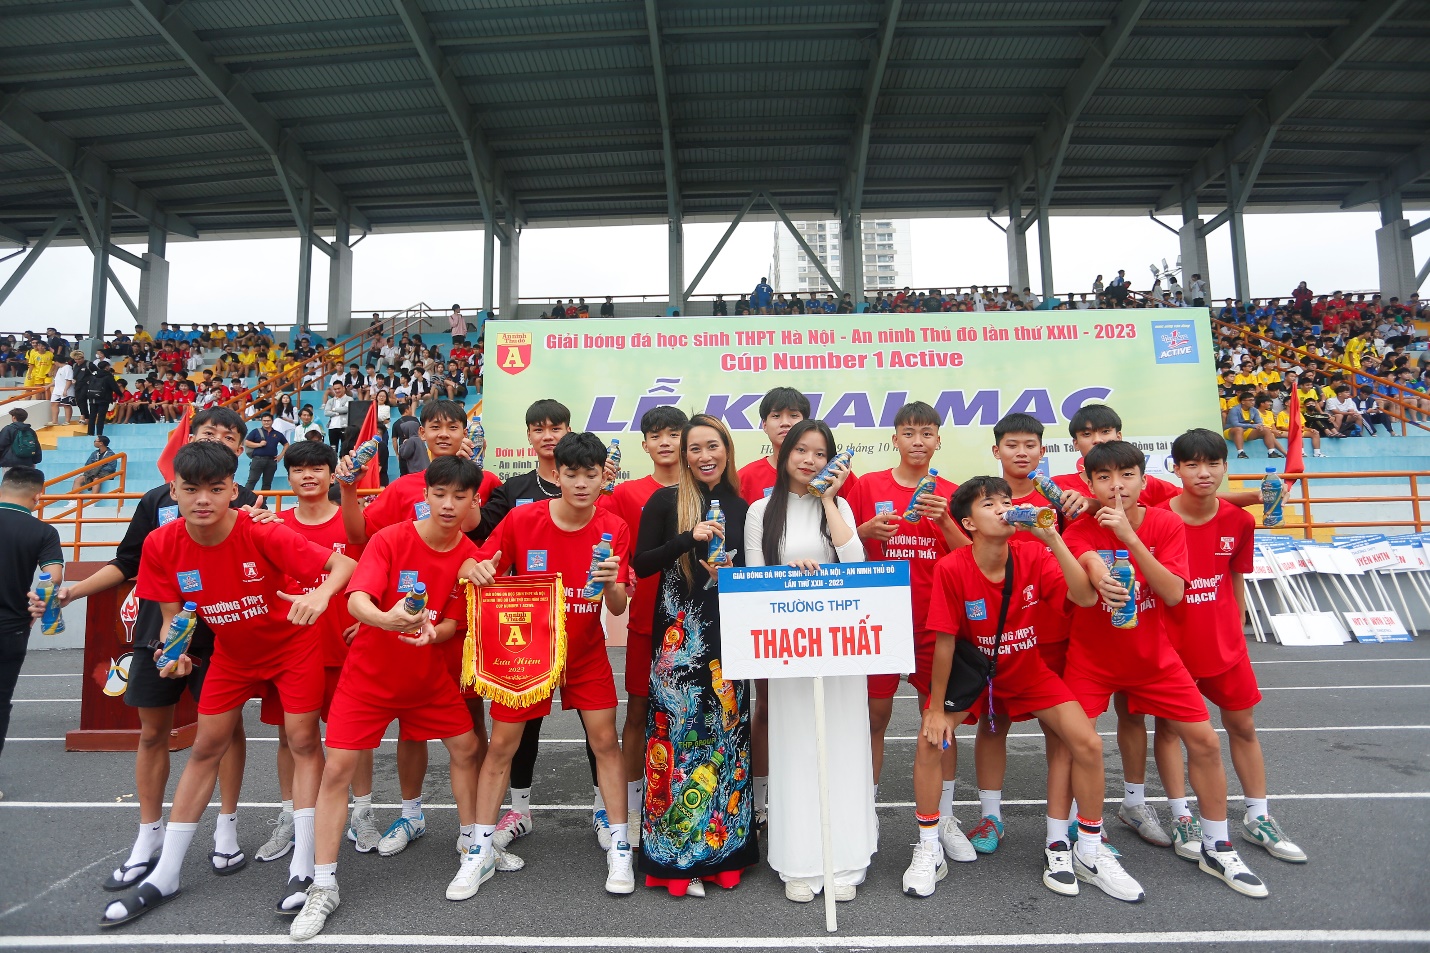 Sôi động ngày khai mạc giải bóng đá học sinh THPT Hà Nội - An ninh Thủ đô lần thứ XXII năm 2023 cup Number 1 Active   - Ảnh 2.